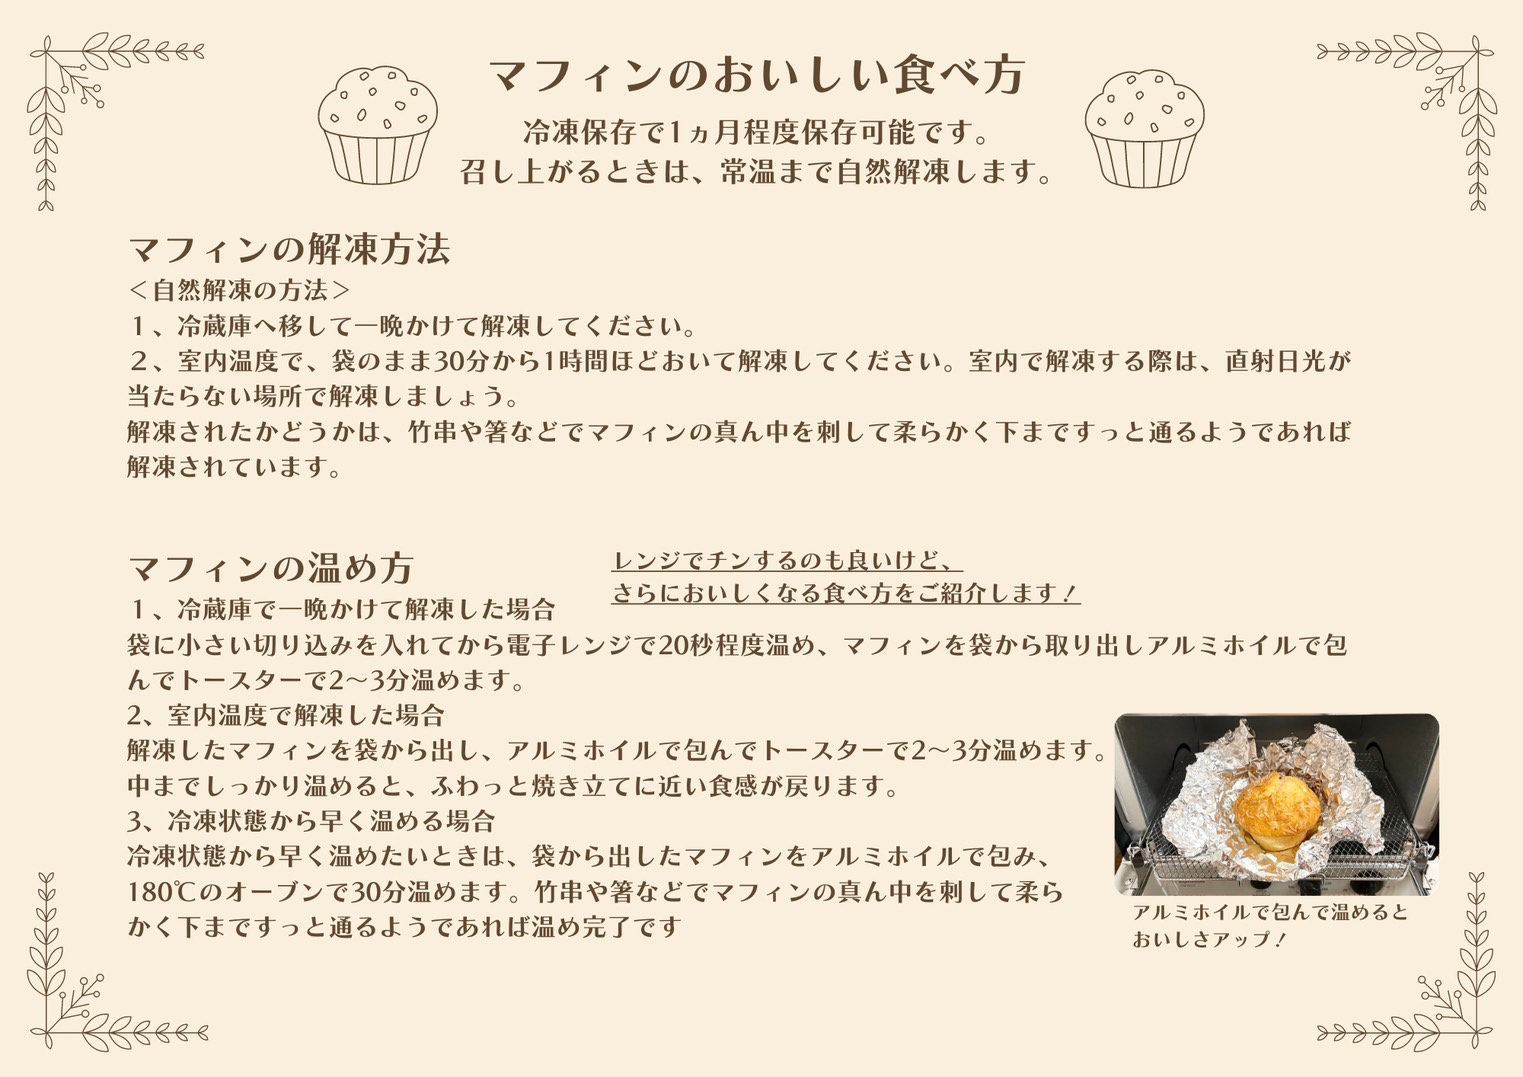 《北海道産バター使用》ミネット アメリカンマフィン 8個セット スイーツマフィンとおかずマフィン7種類詰め合わせ [スイーツ 焼き菓子 惣菜パン] TF0659